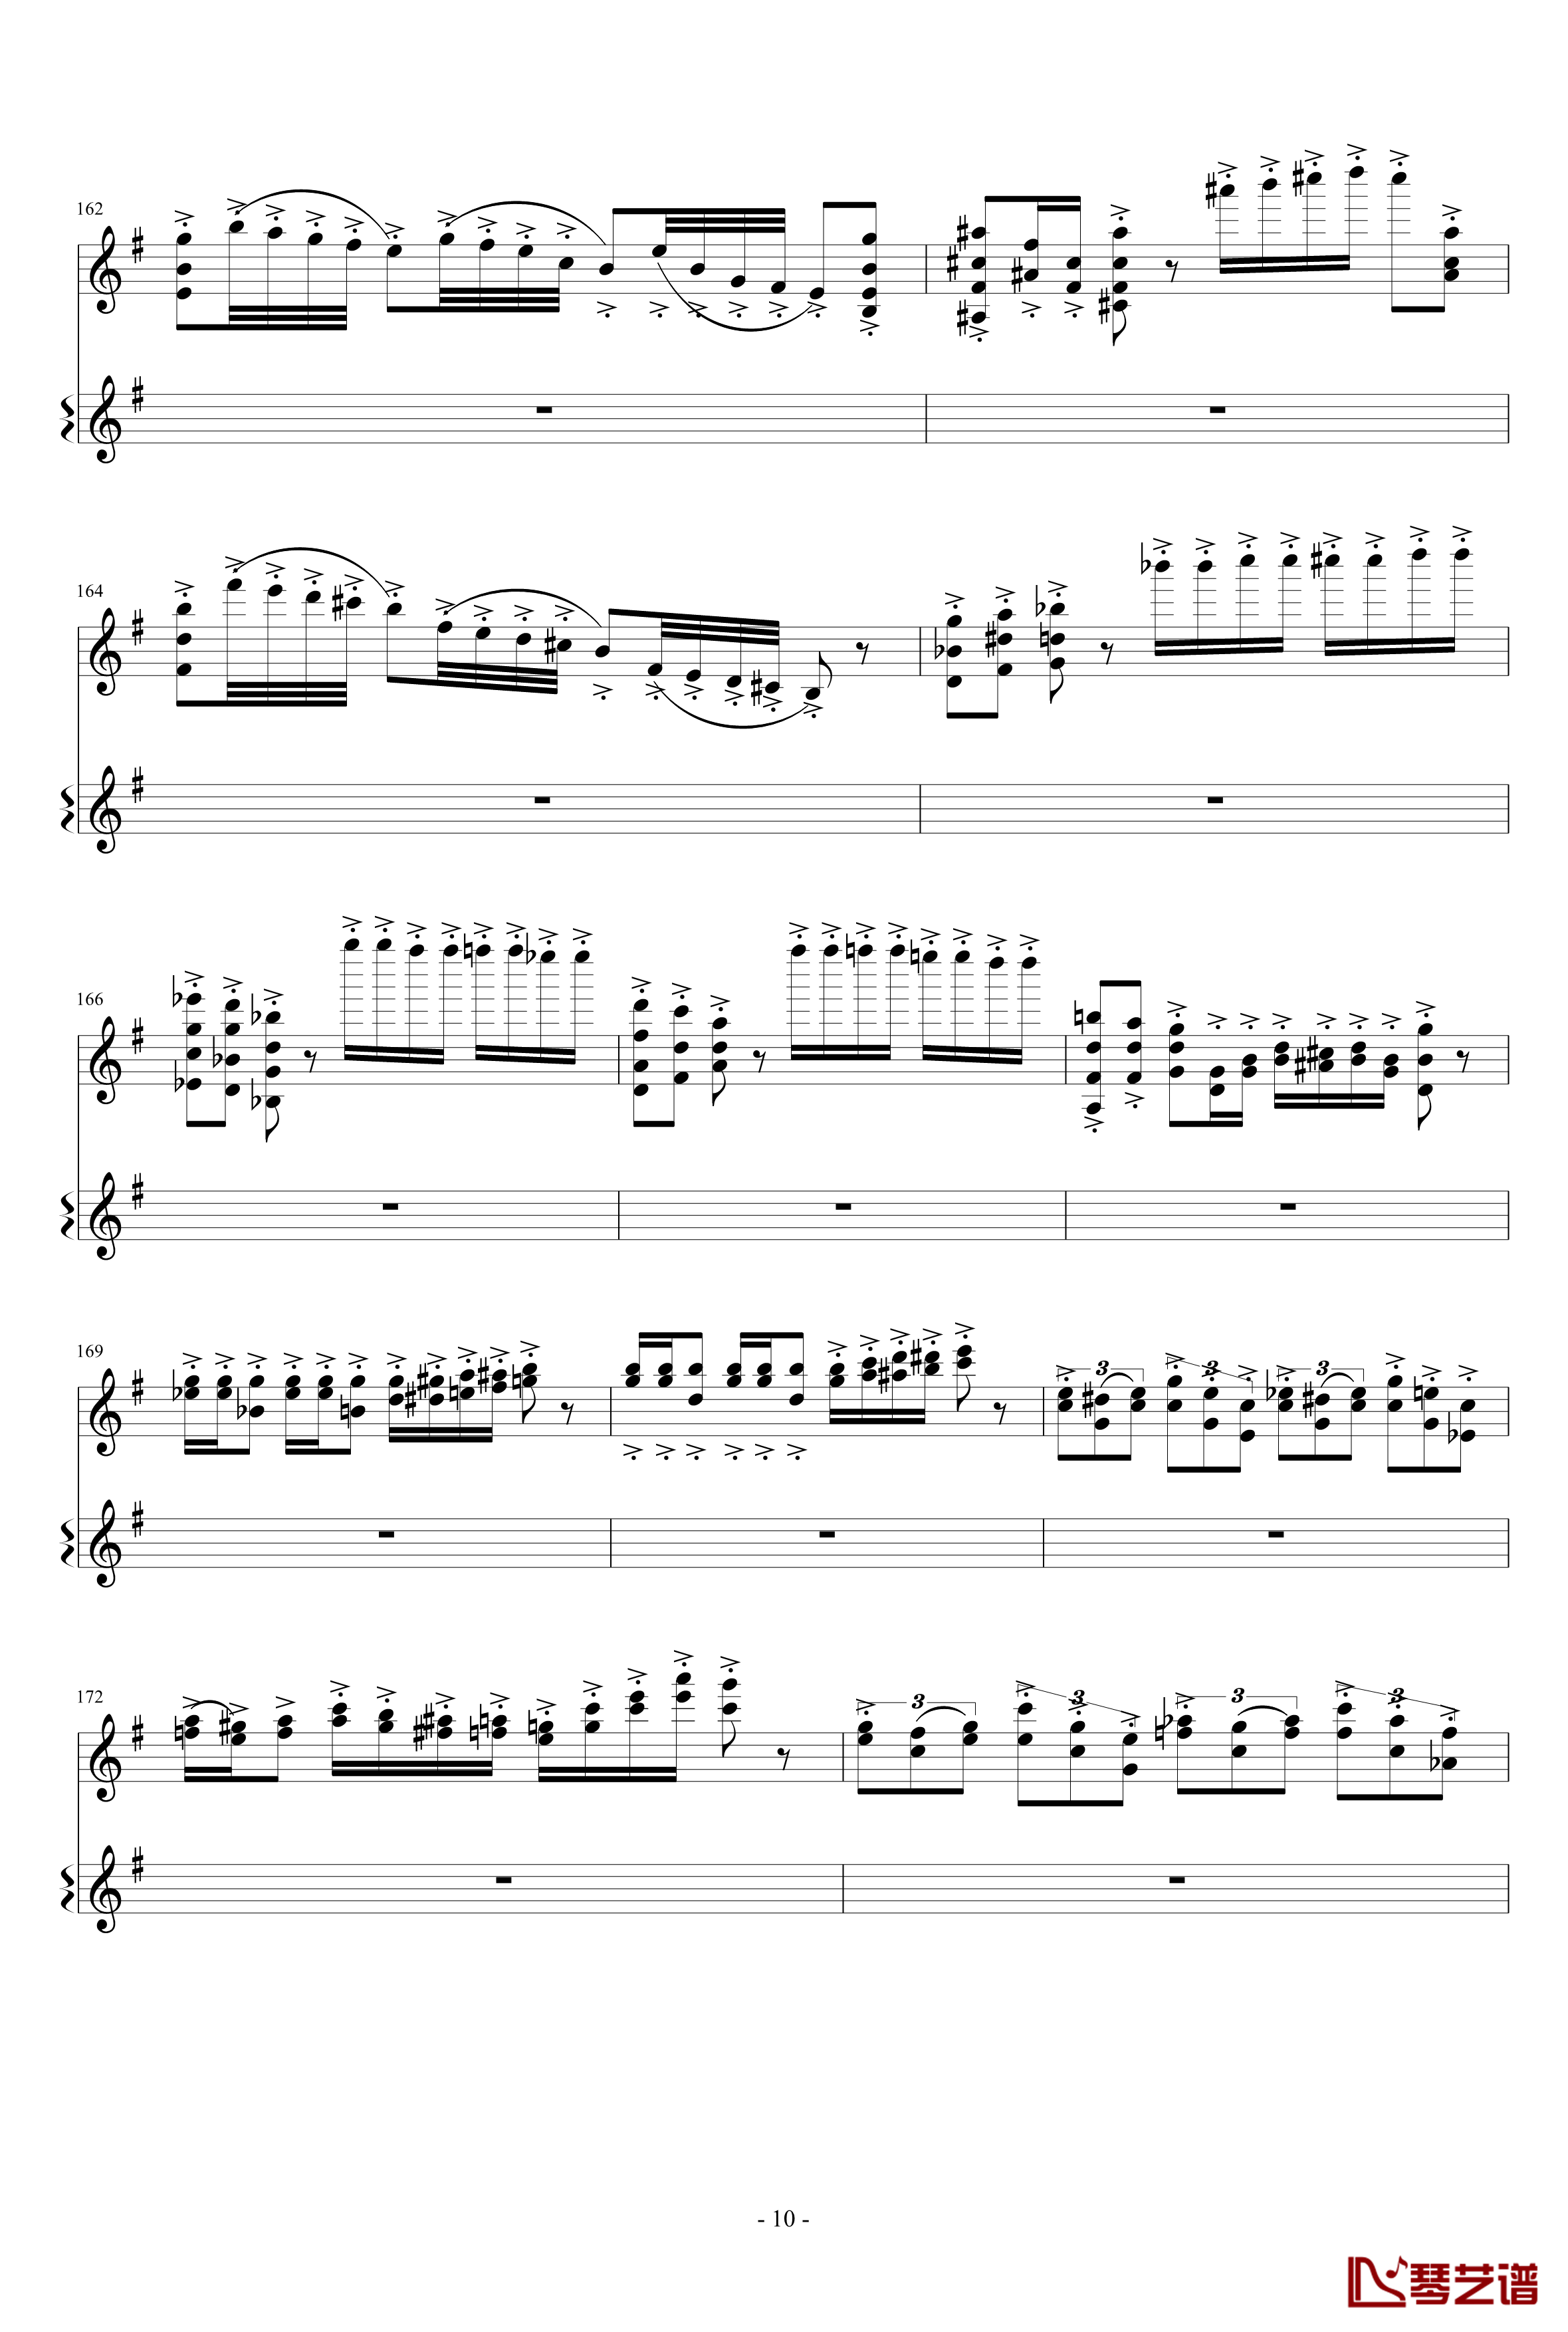 意大利国歌变奏曲钢琴谱-只修改了一个音-DXF10